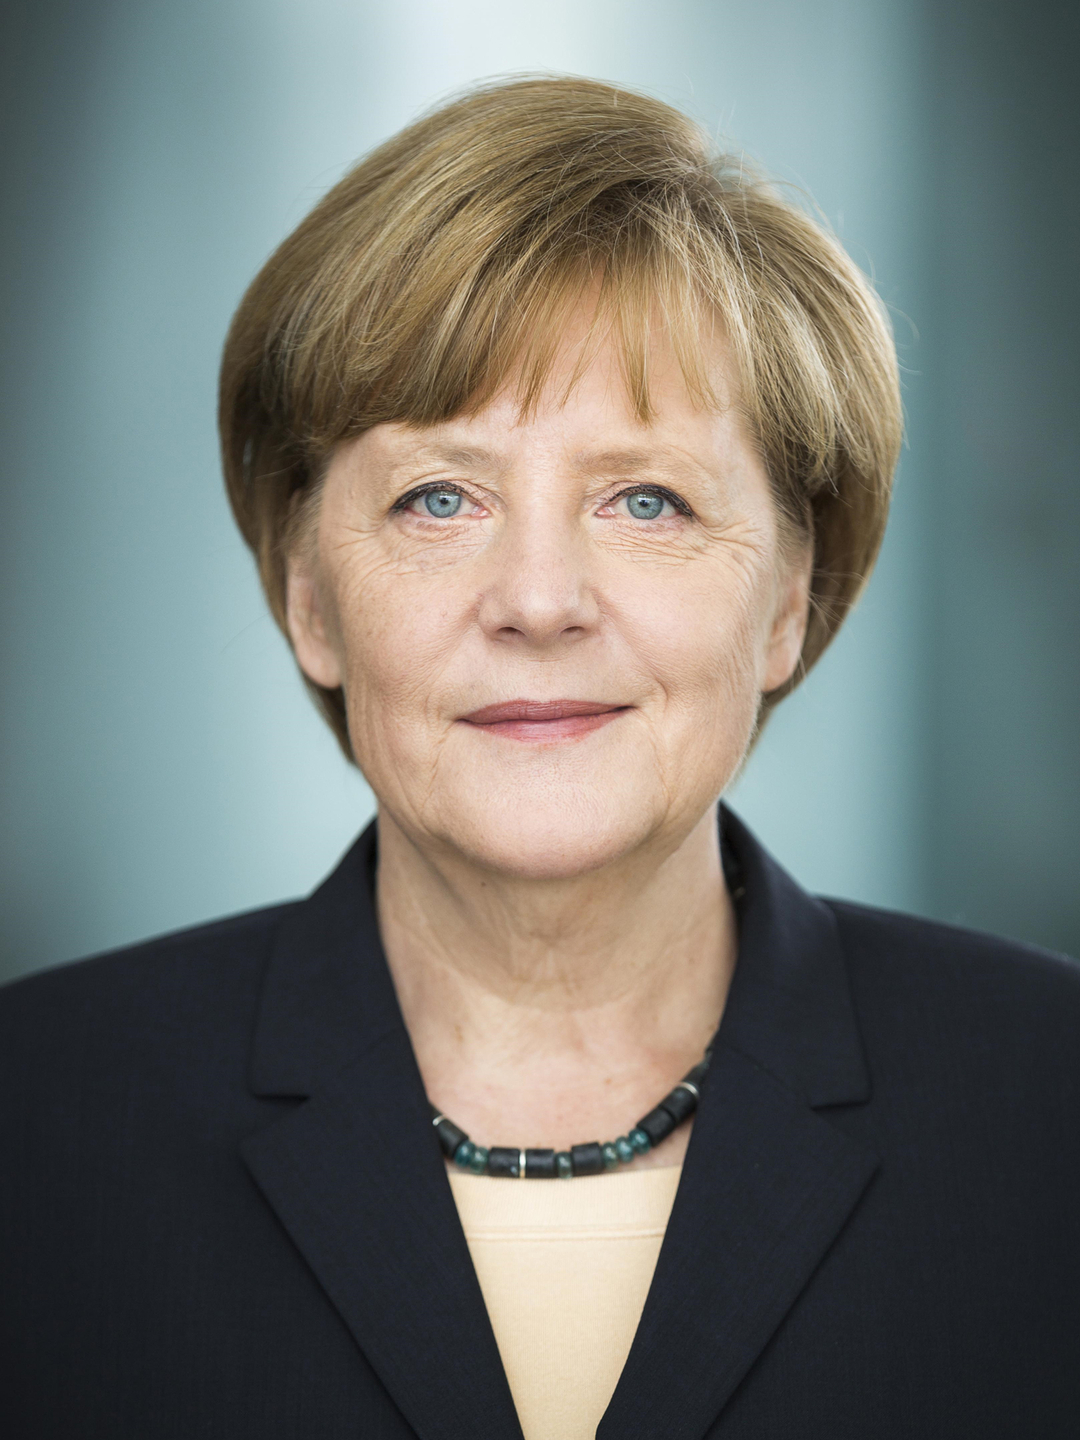 Angela Merkel where did she study